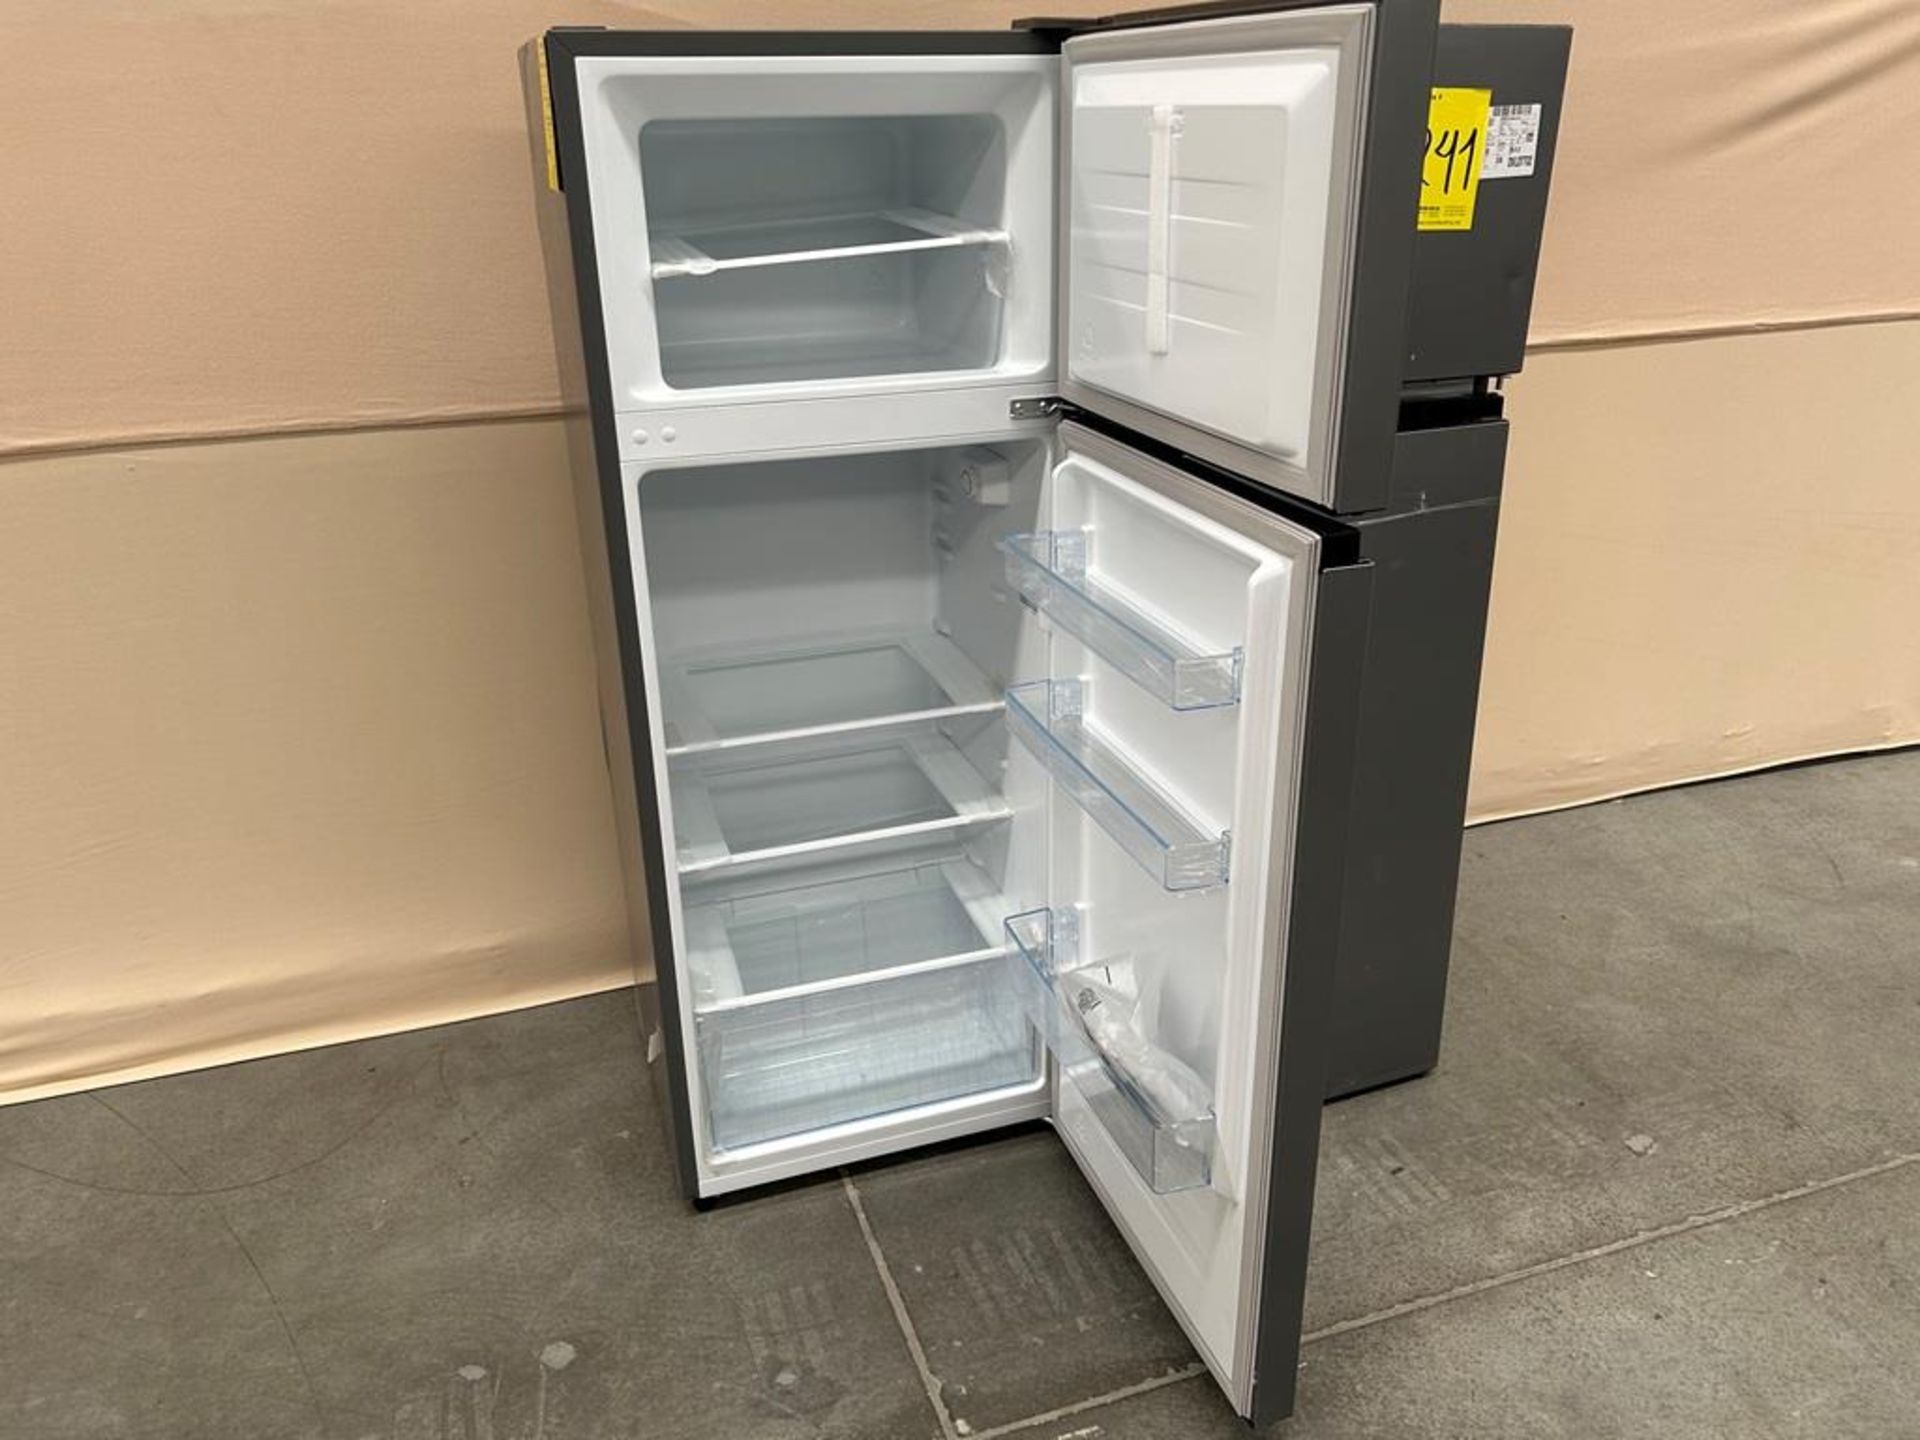 Lote de 2 refrigeradores contiene: Refrigerador Marca HISENSE, Modelo RT80D6AGX, Serie 20422, Color - Image 4 of 7